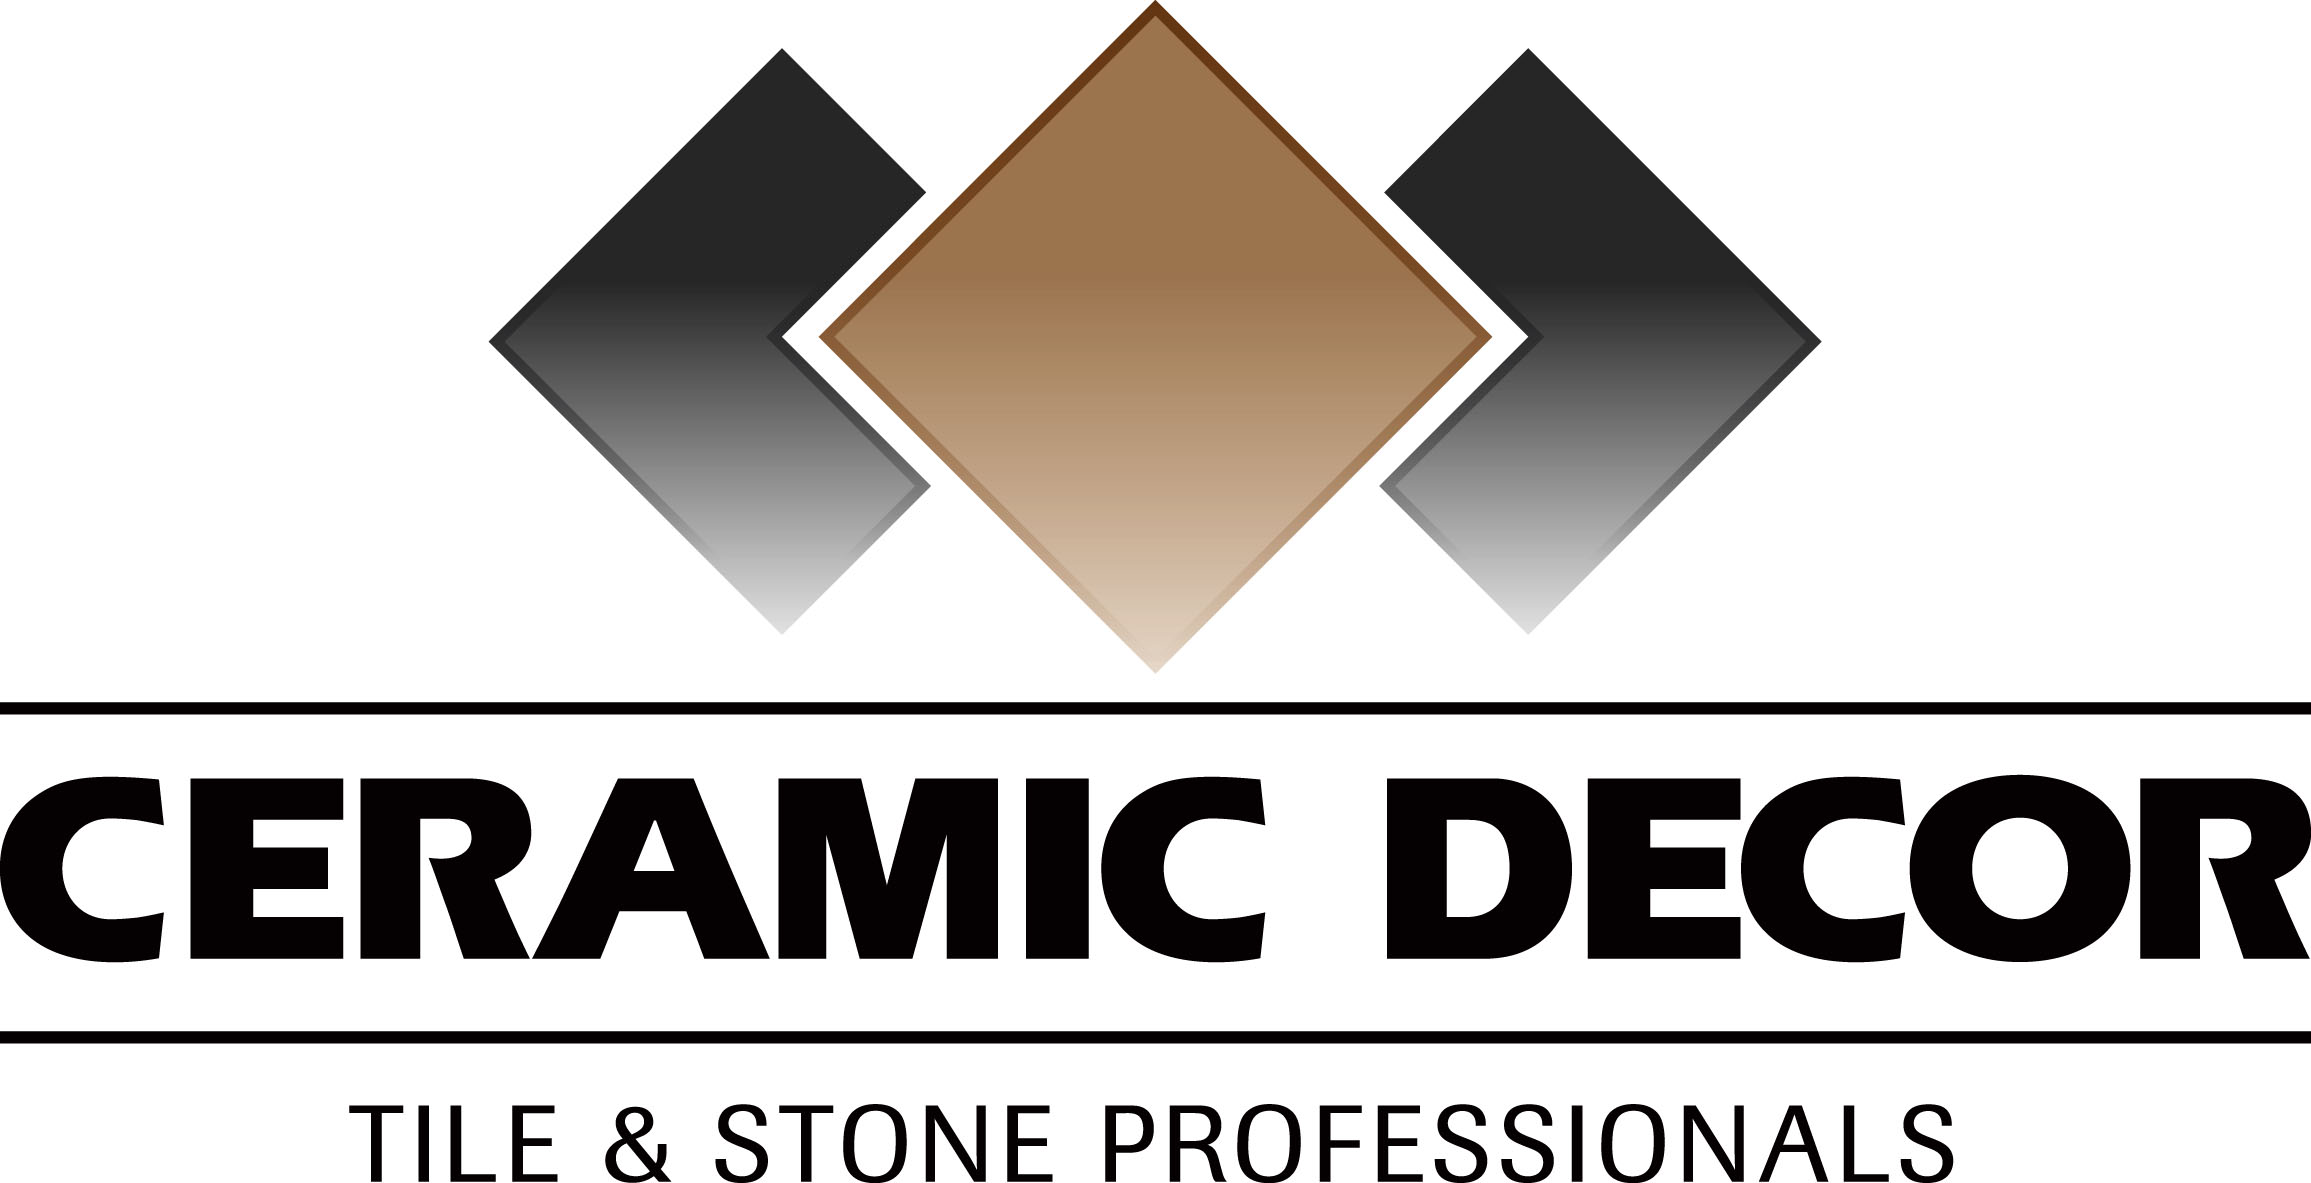 Ceramic Decor Ltd